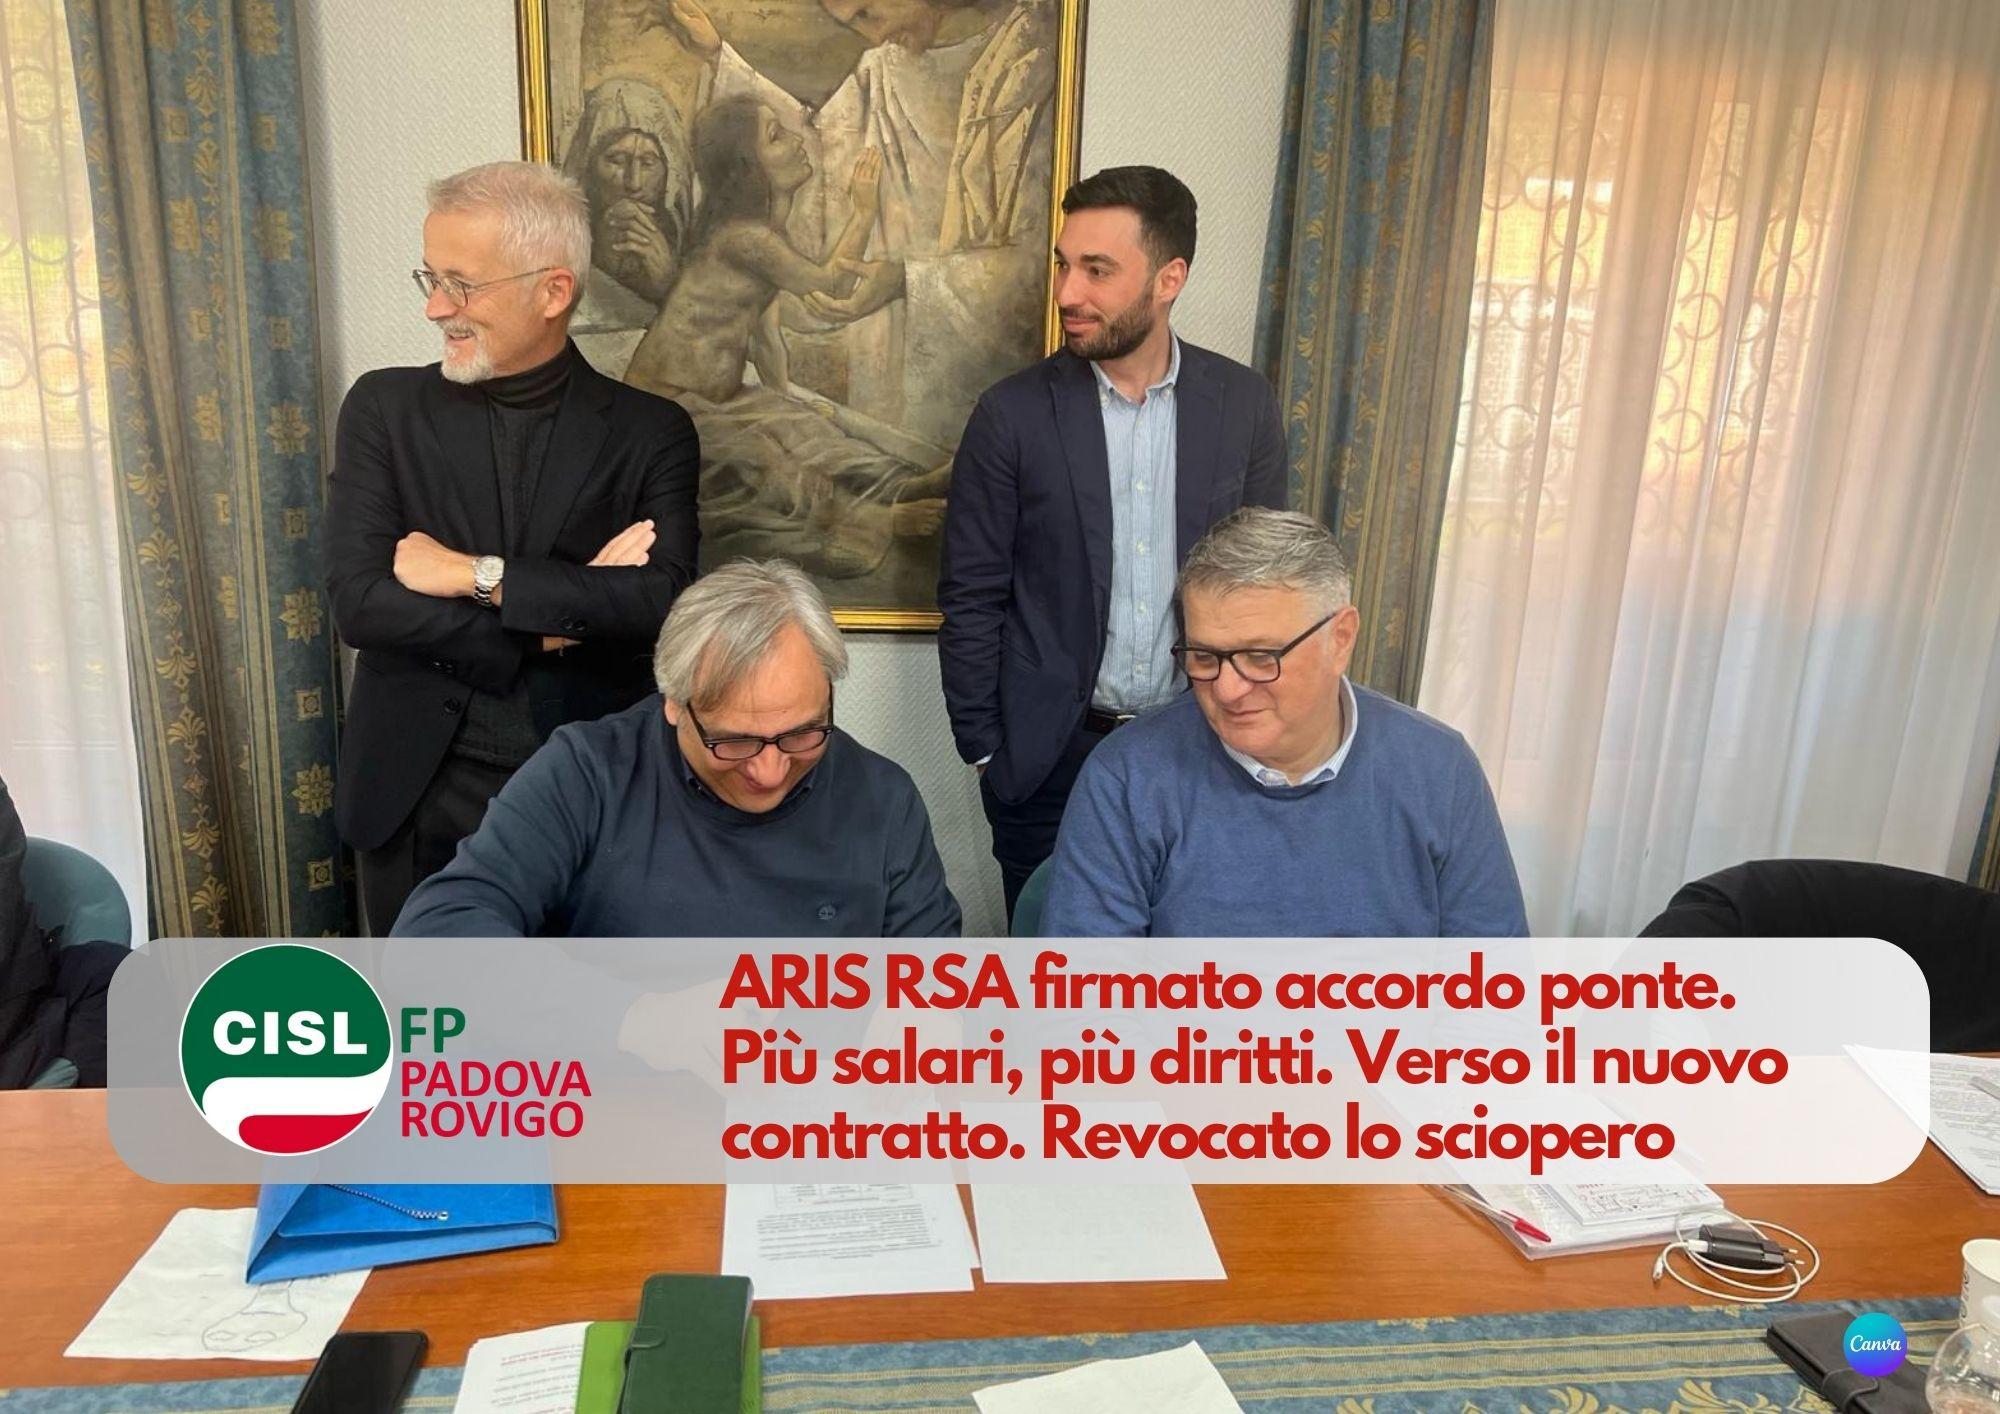 CISL FP Padova Rovigo. ARIS RSA firmato accordo ponte. Più salari, più diritti. Verso il nuovo contratto